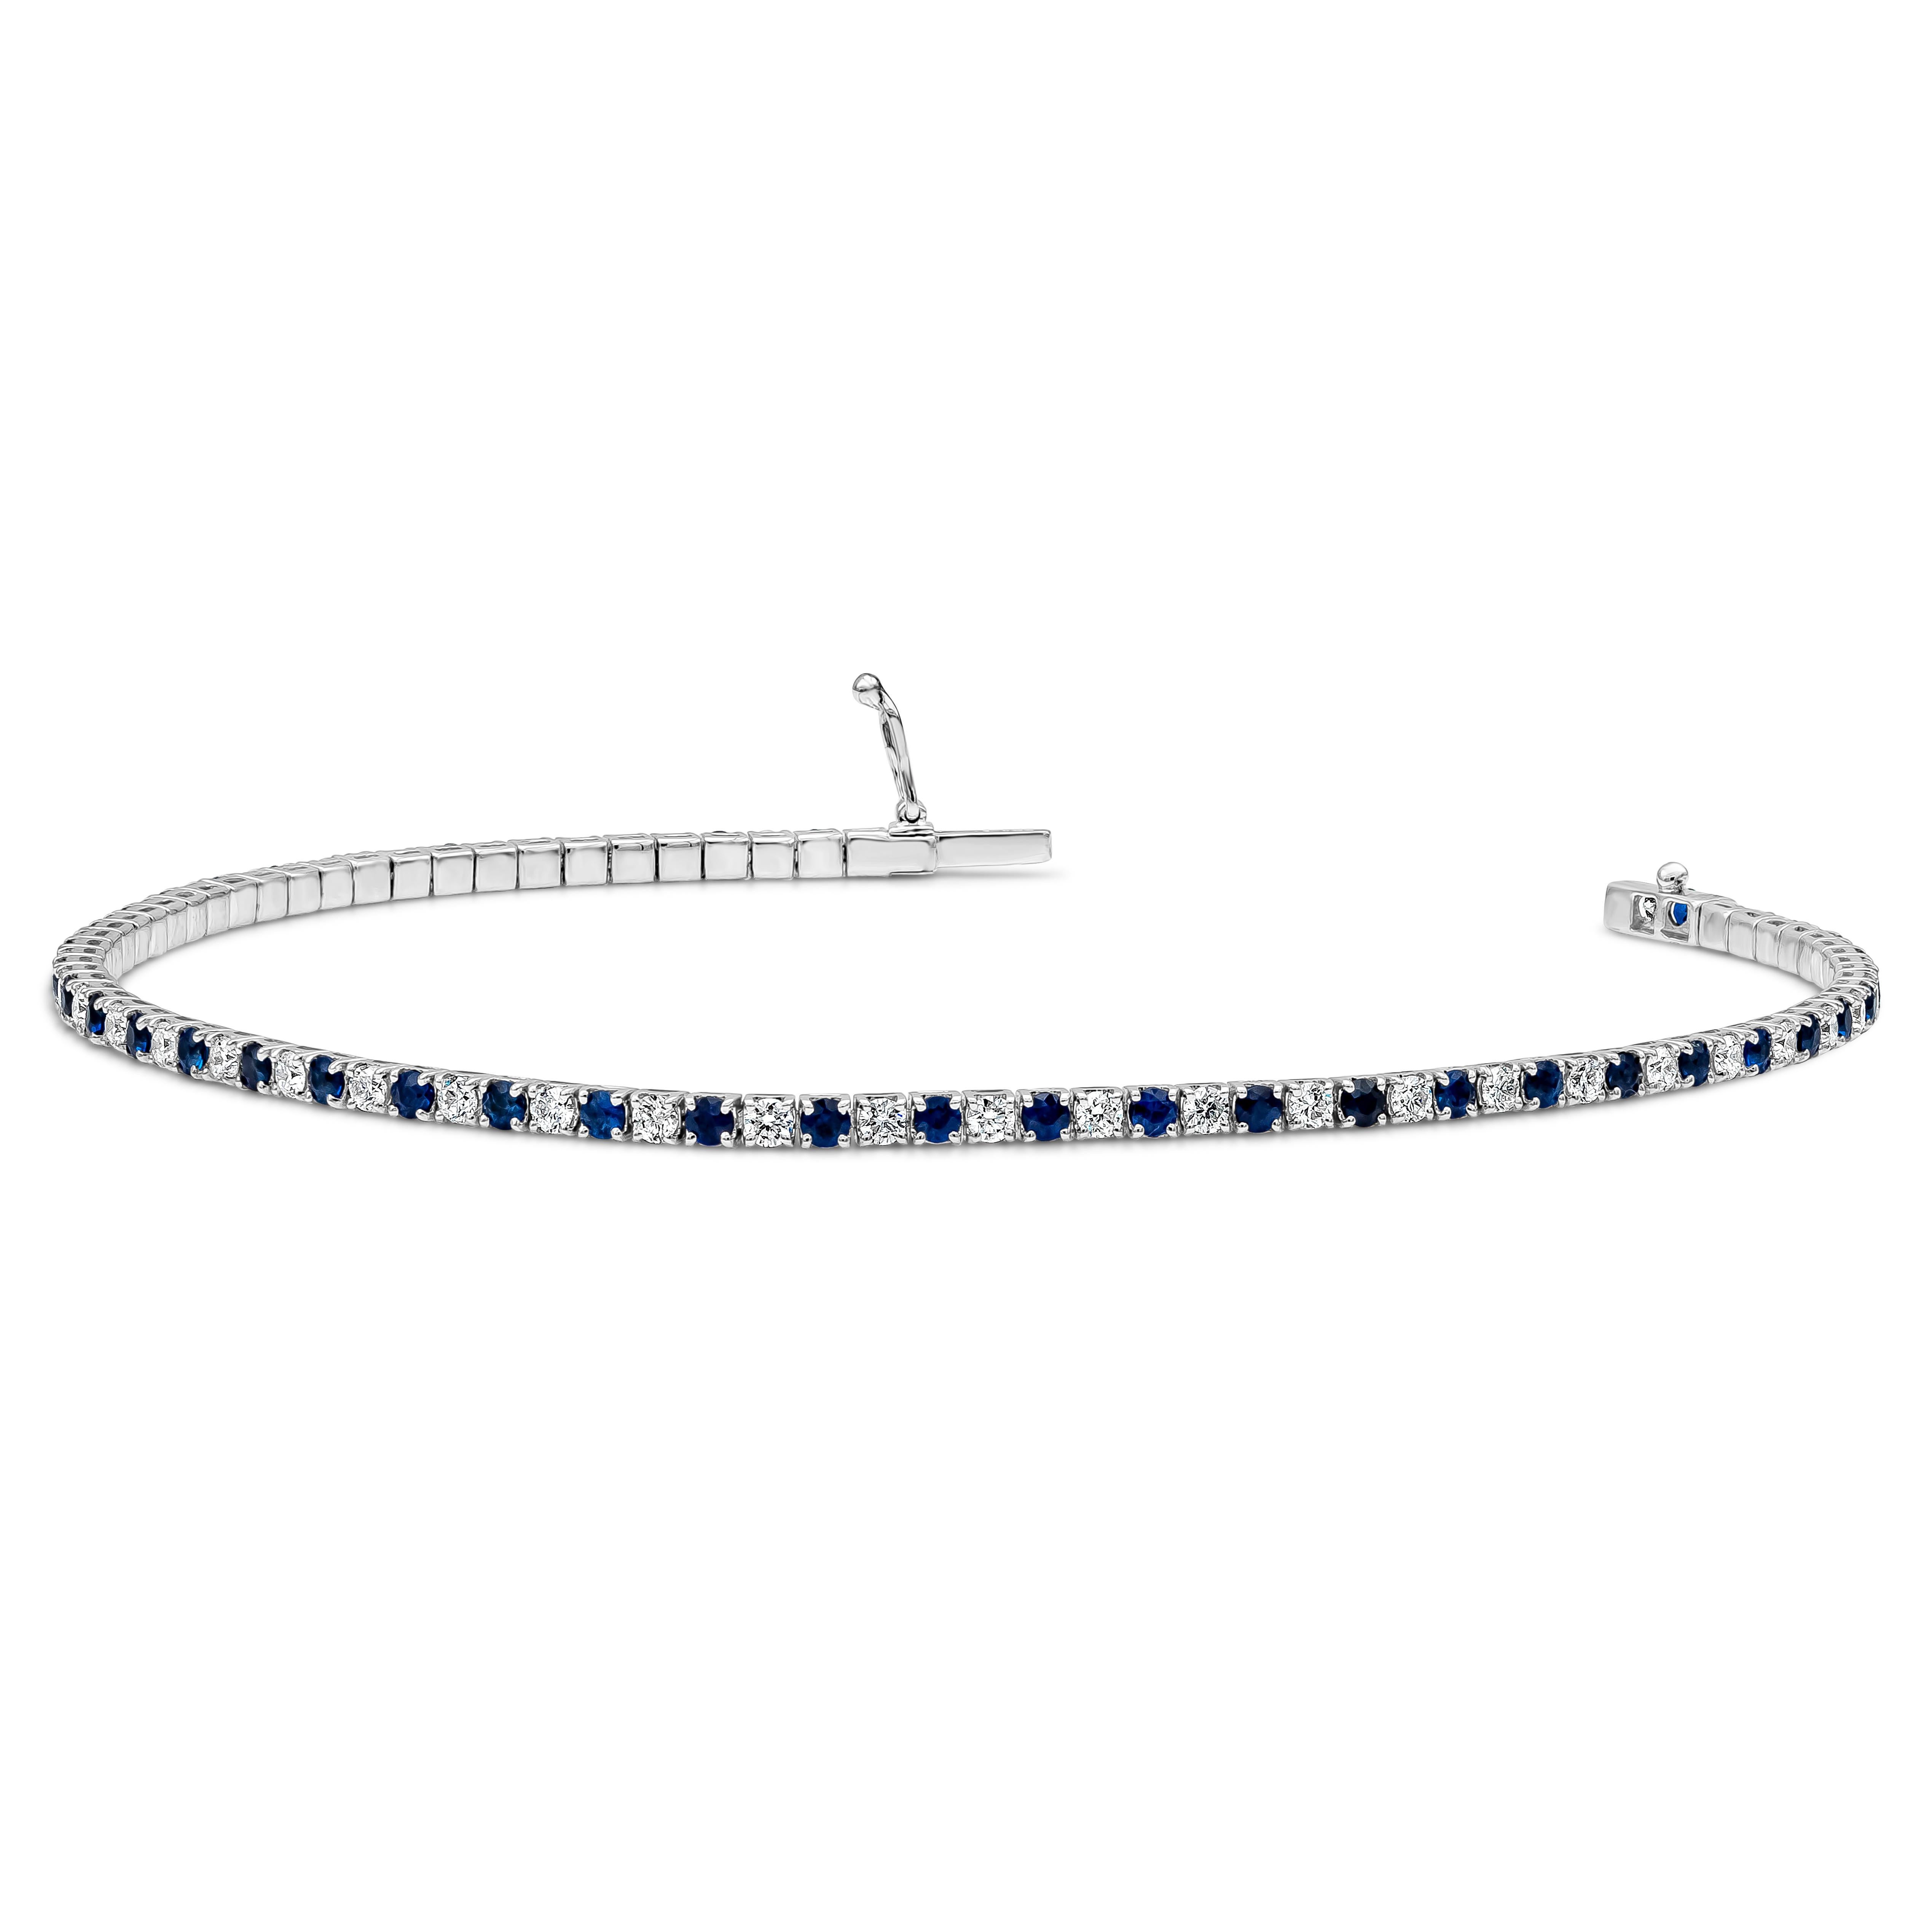 An diesem Tennisarmband reihen sich abwechselnd runde blaue Saphire im Brillantschliff und runde Diamanten im Brillantschliff. Der blaue Saphir wiegt 1,39 Karat und die Diamanten wiegen 0,99 Karat in der Farbe F und in der Reinheit VS-SI.